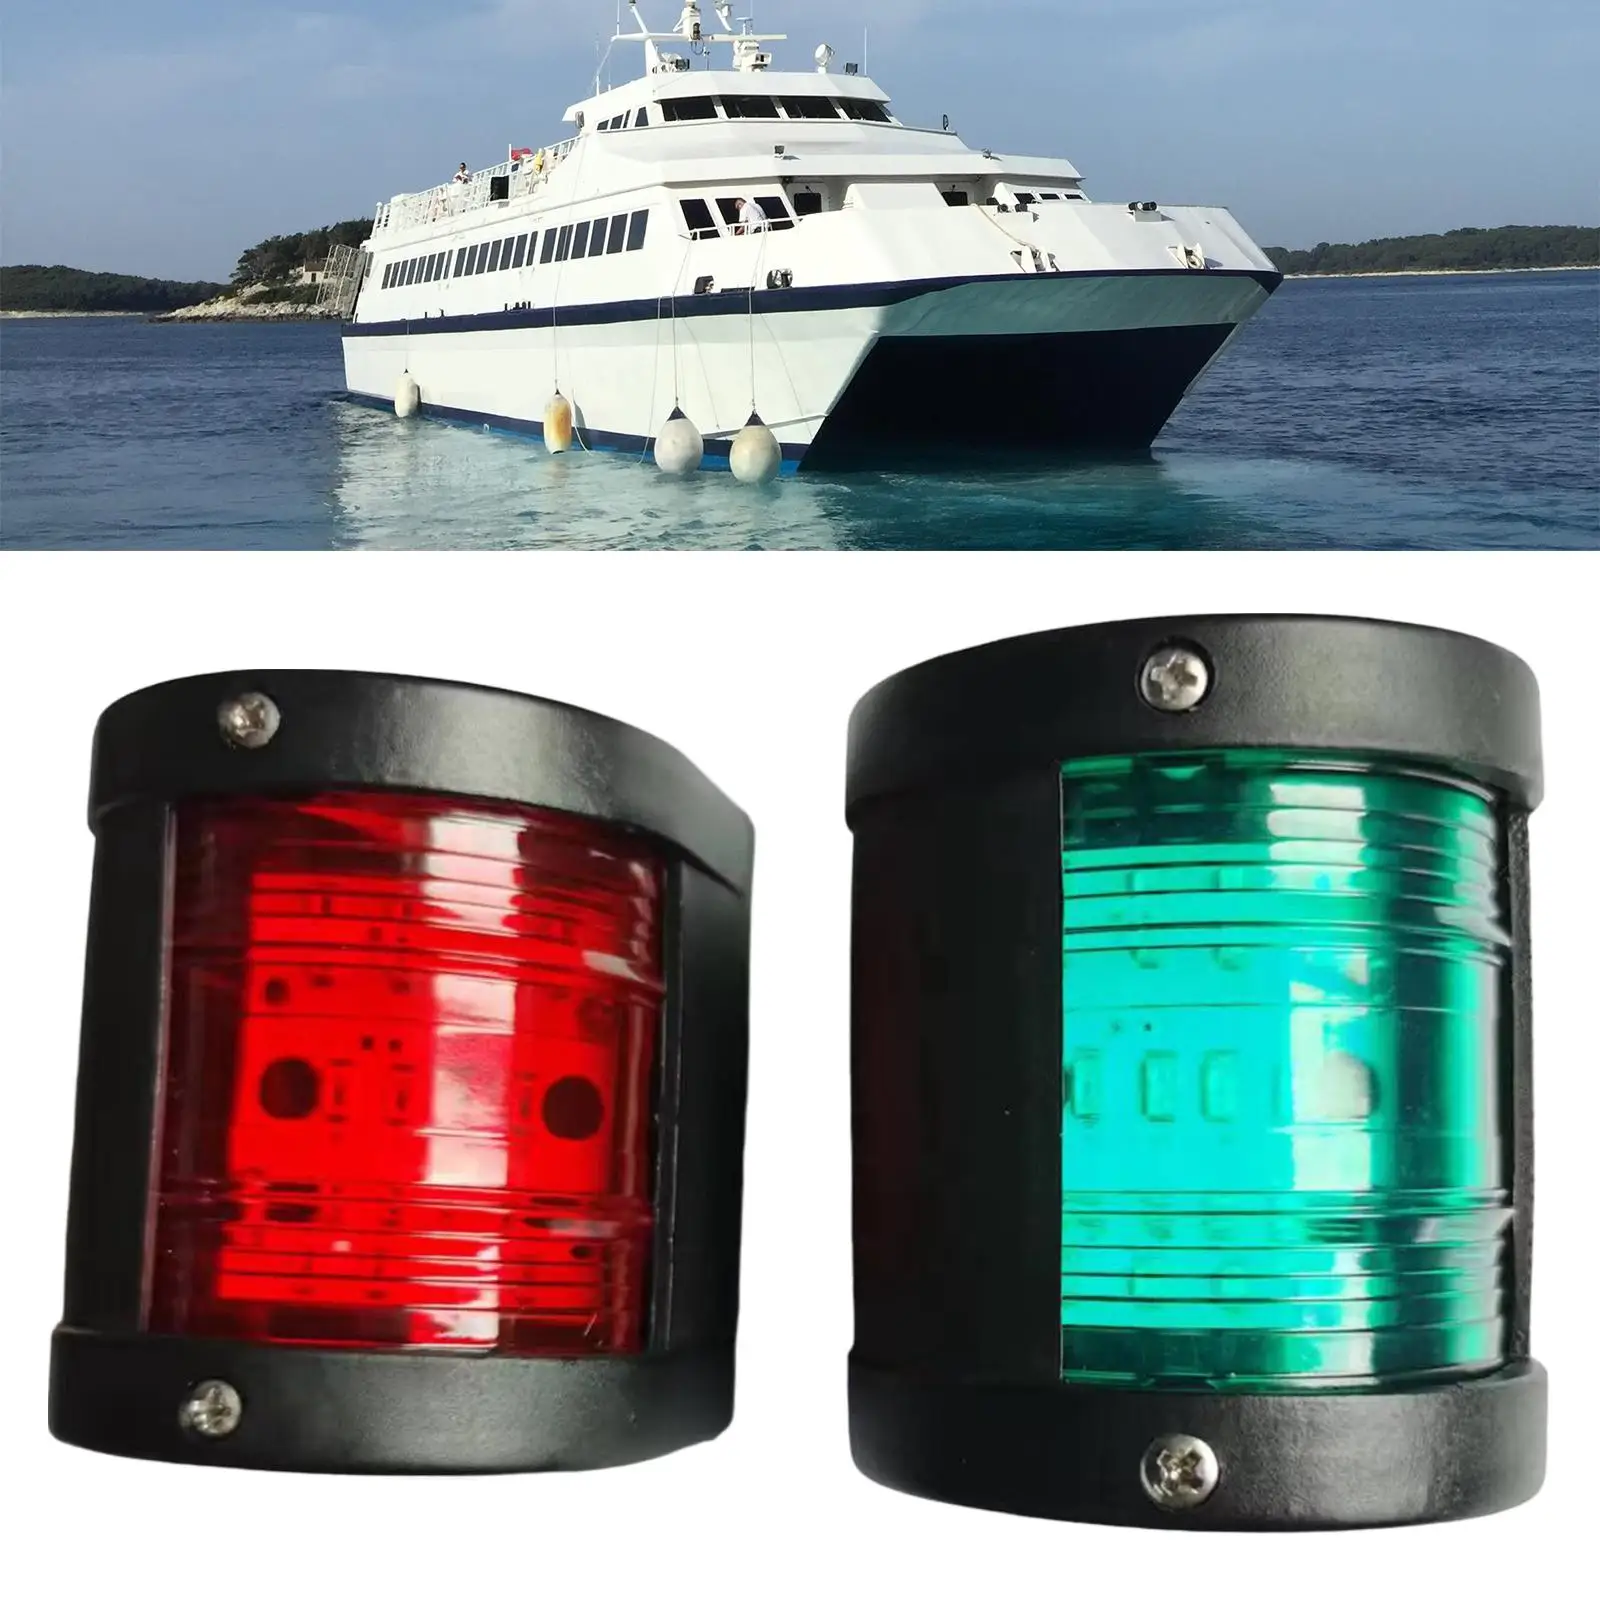 2x Signal Navigation Light Starboard Port Stern Lamp for Boat Port